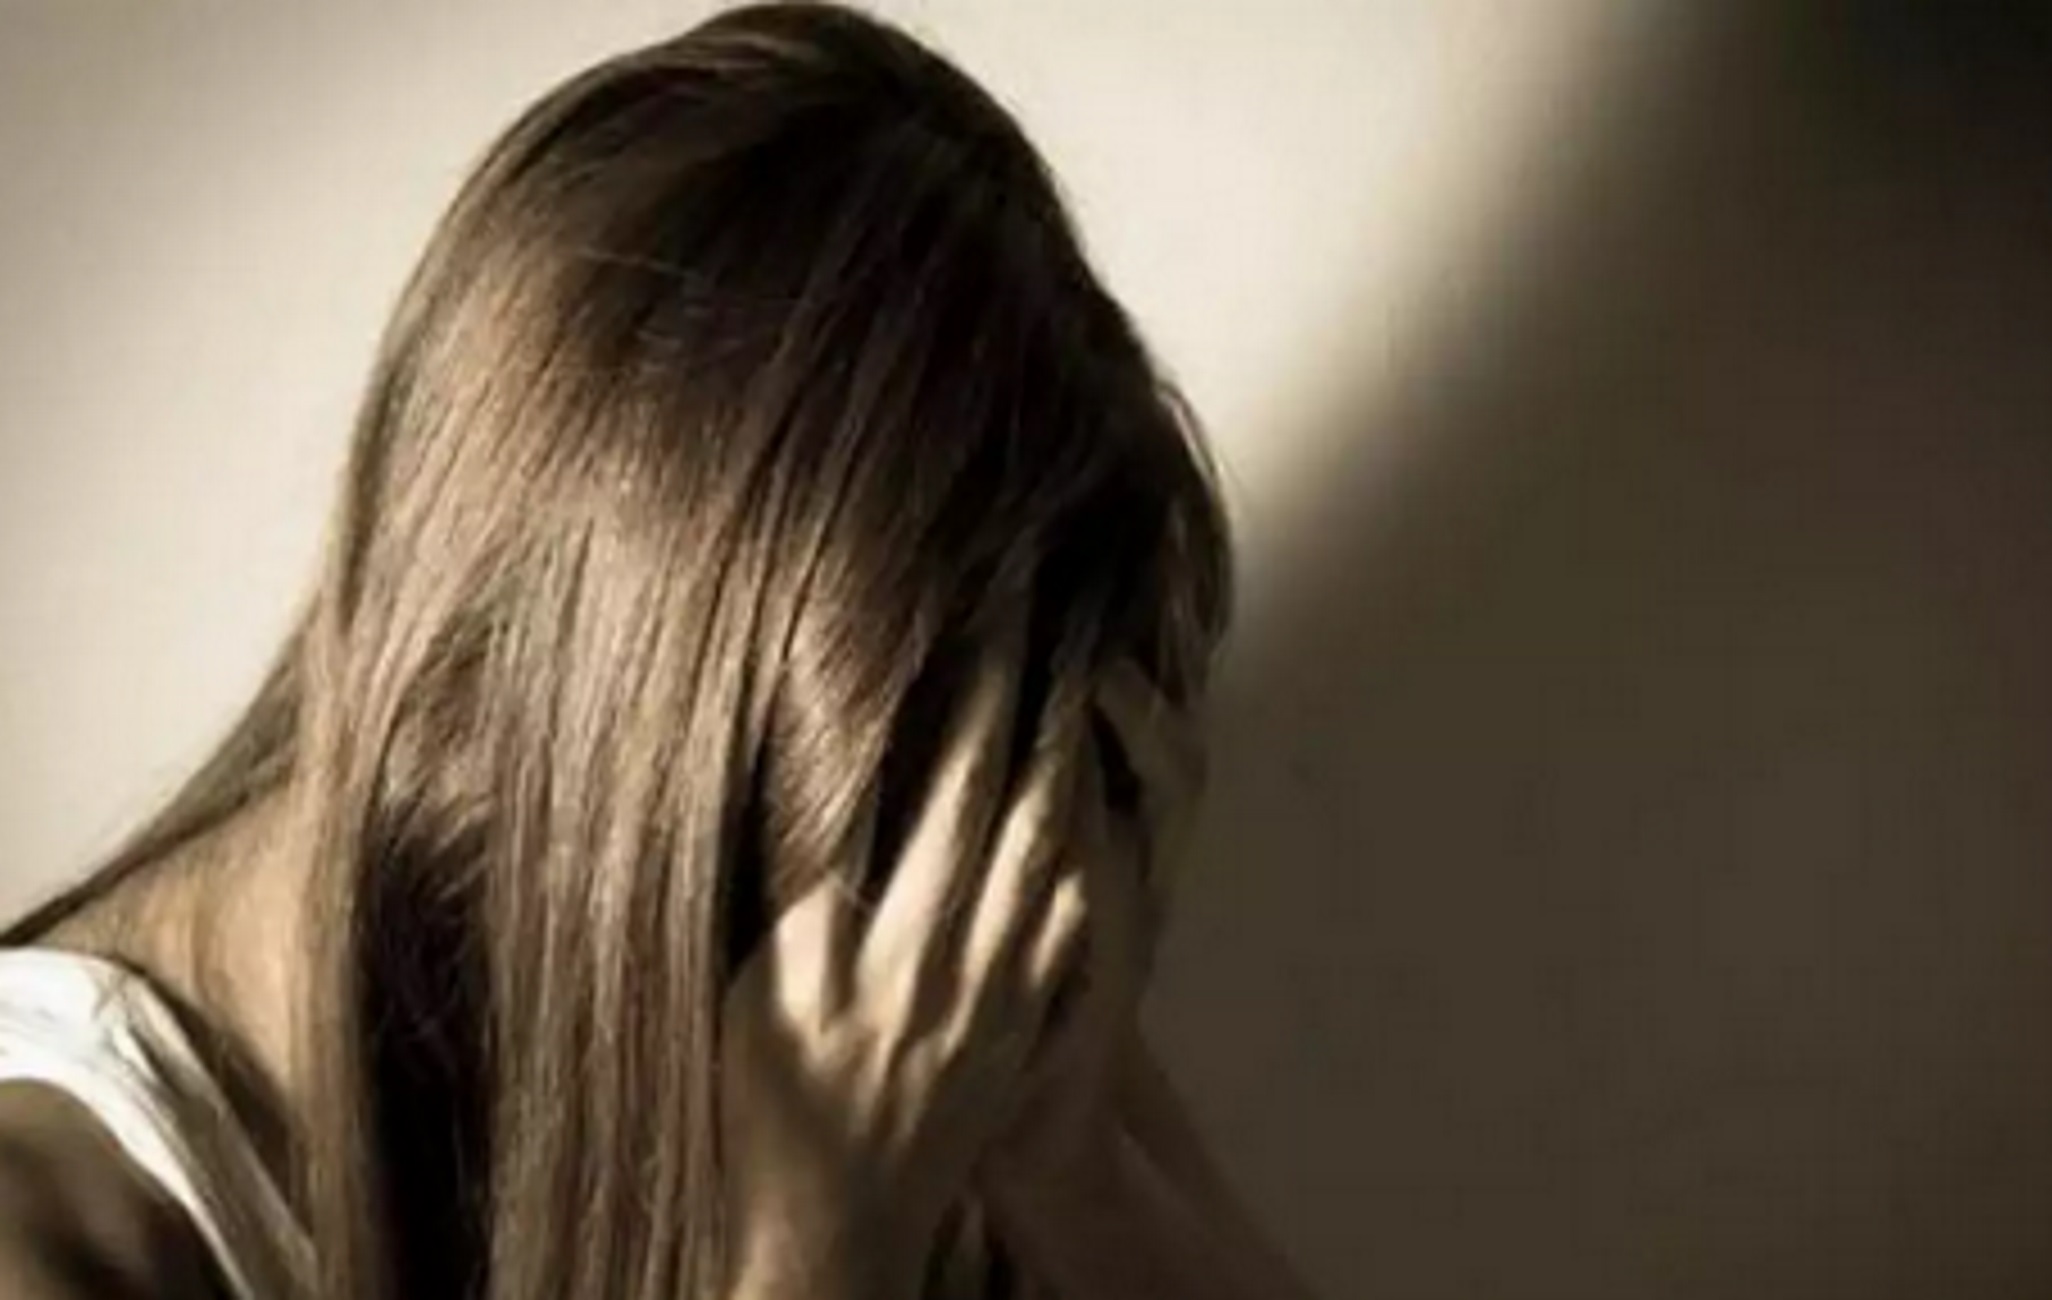 Χανιά: Ελεύθερος μετά την απολογία για βιασμό της γυναίκας του – Οι όροι που επιβλήθηκαν